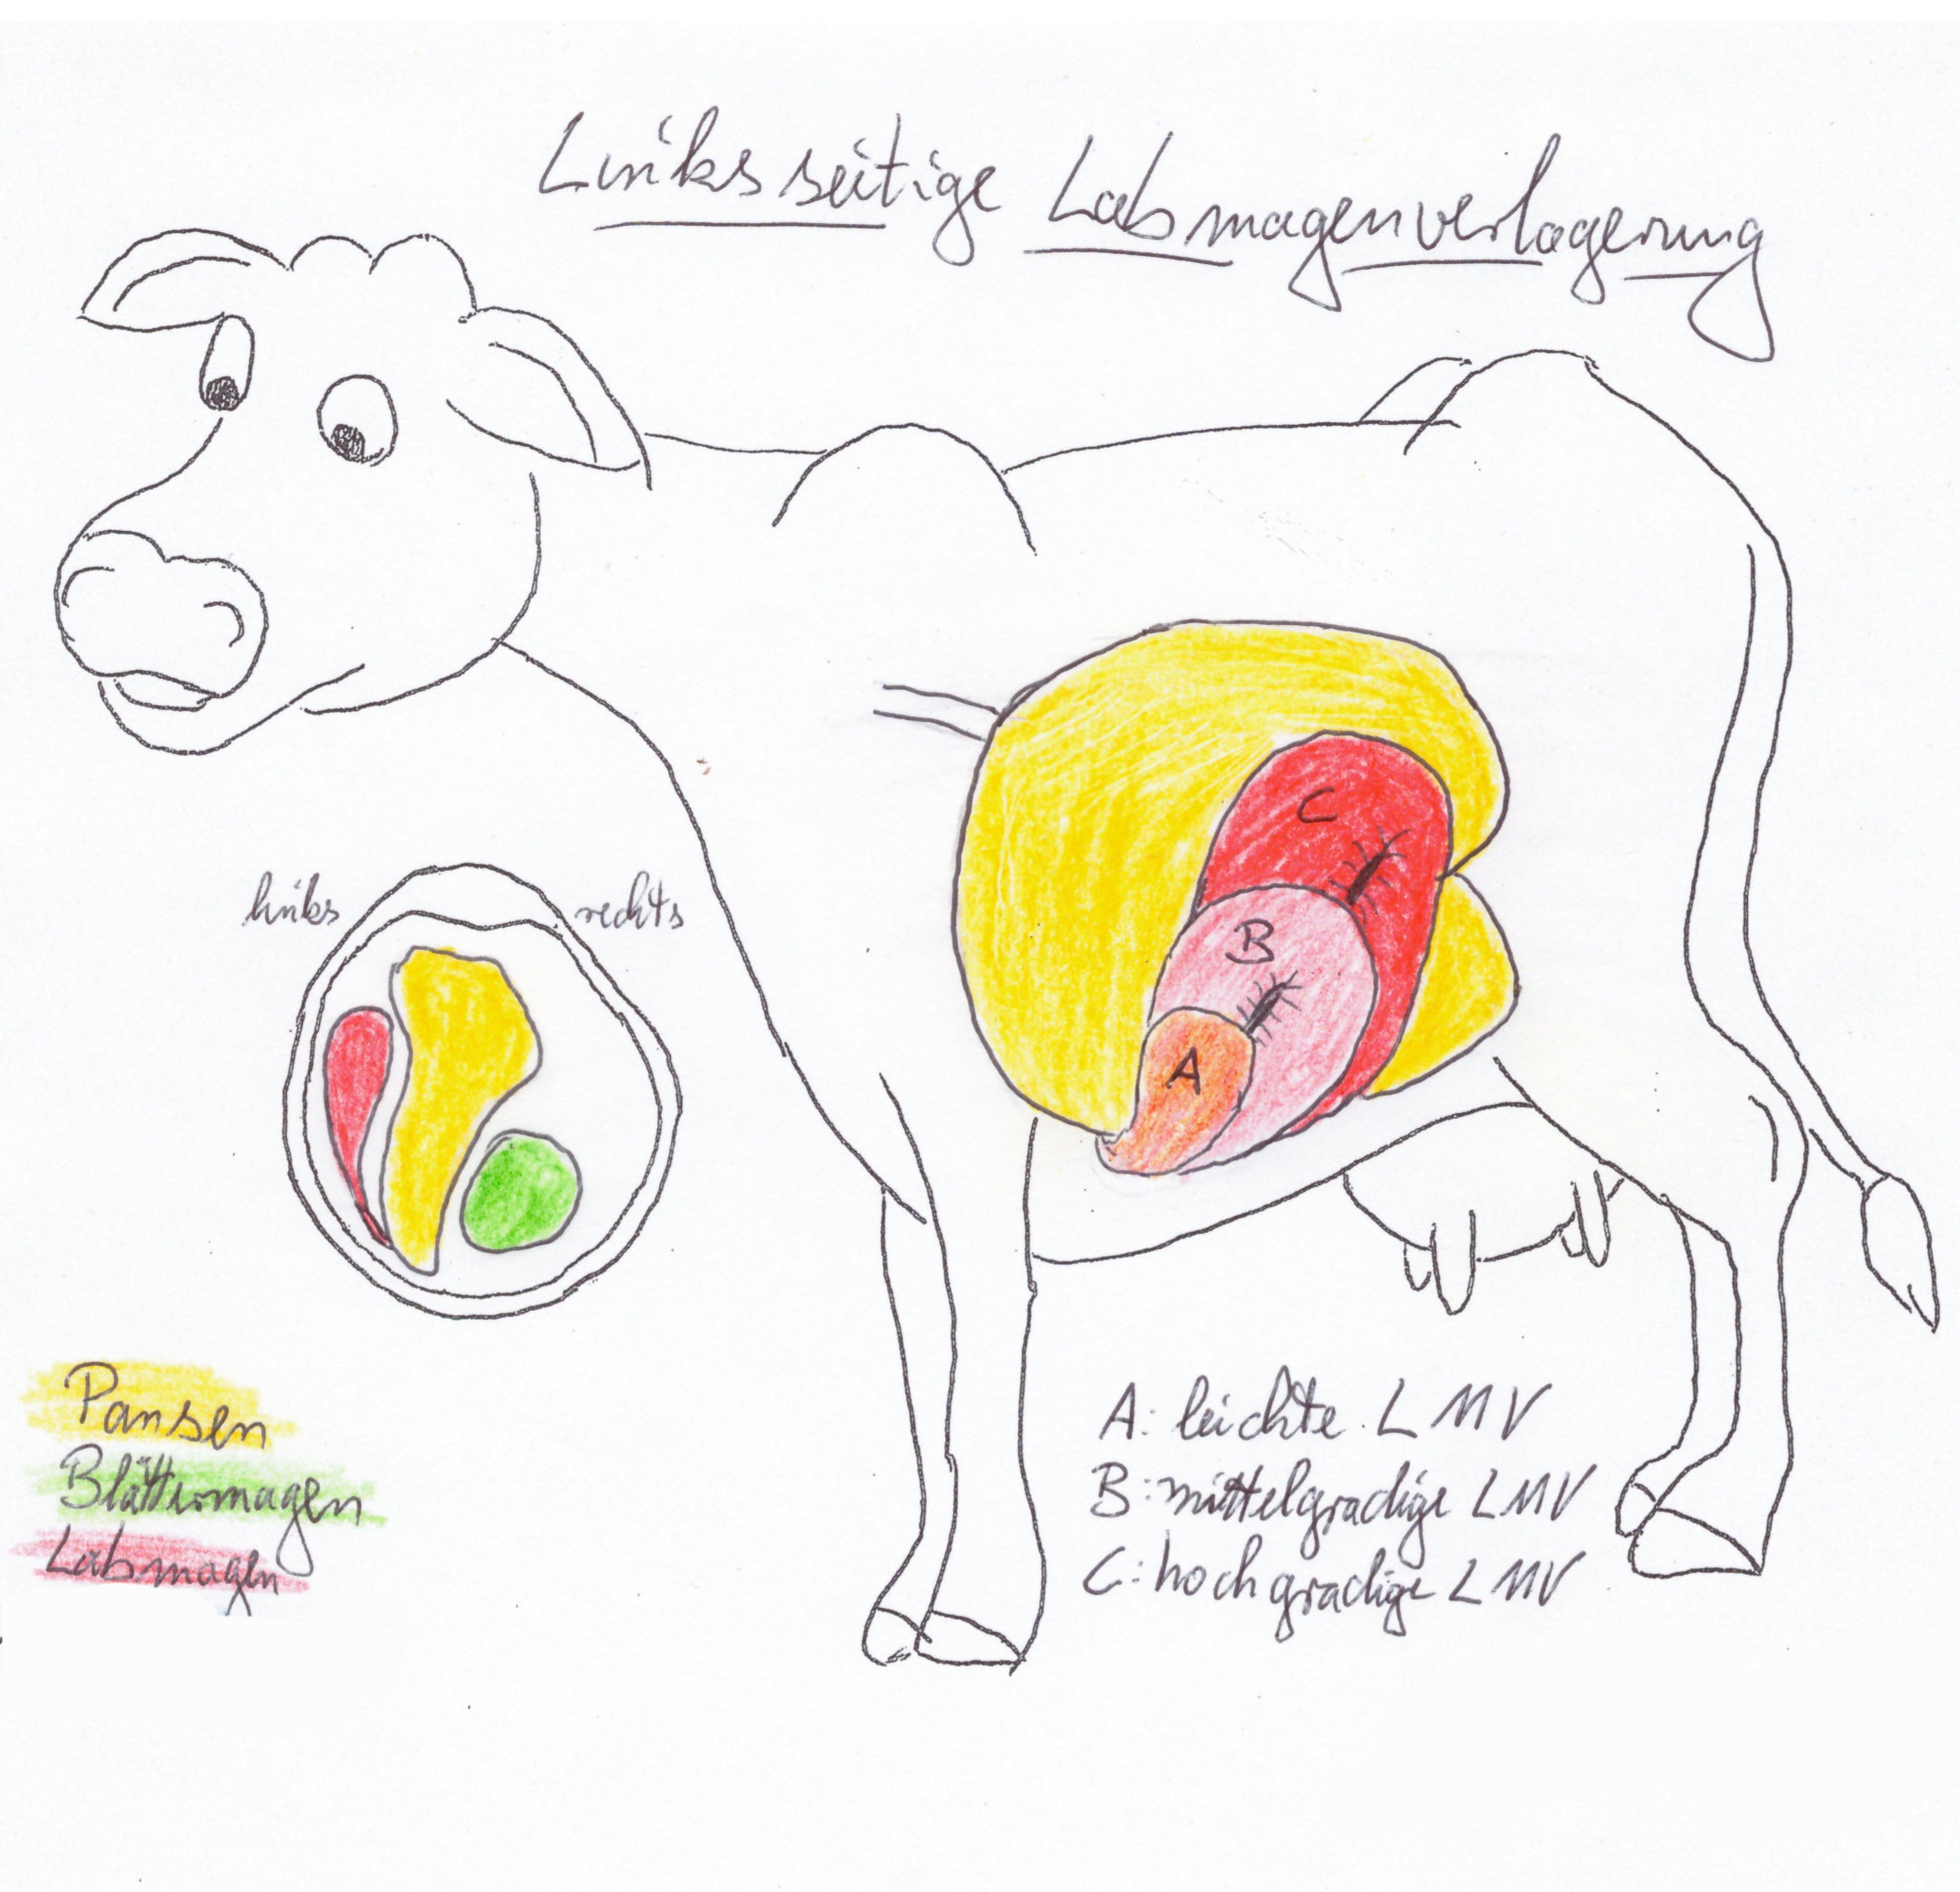 Ursachen der linksseitigen Labmagen-verlagerung bei der Milchkuh